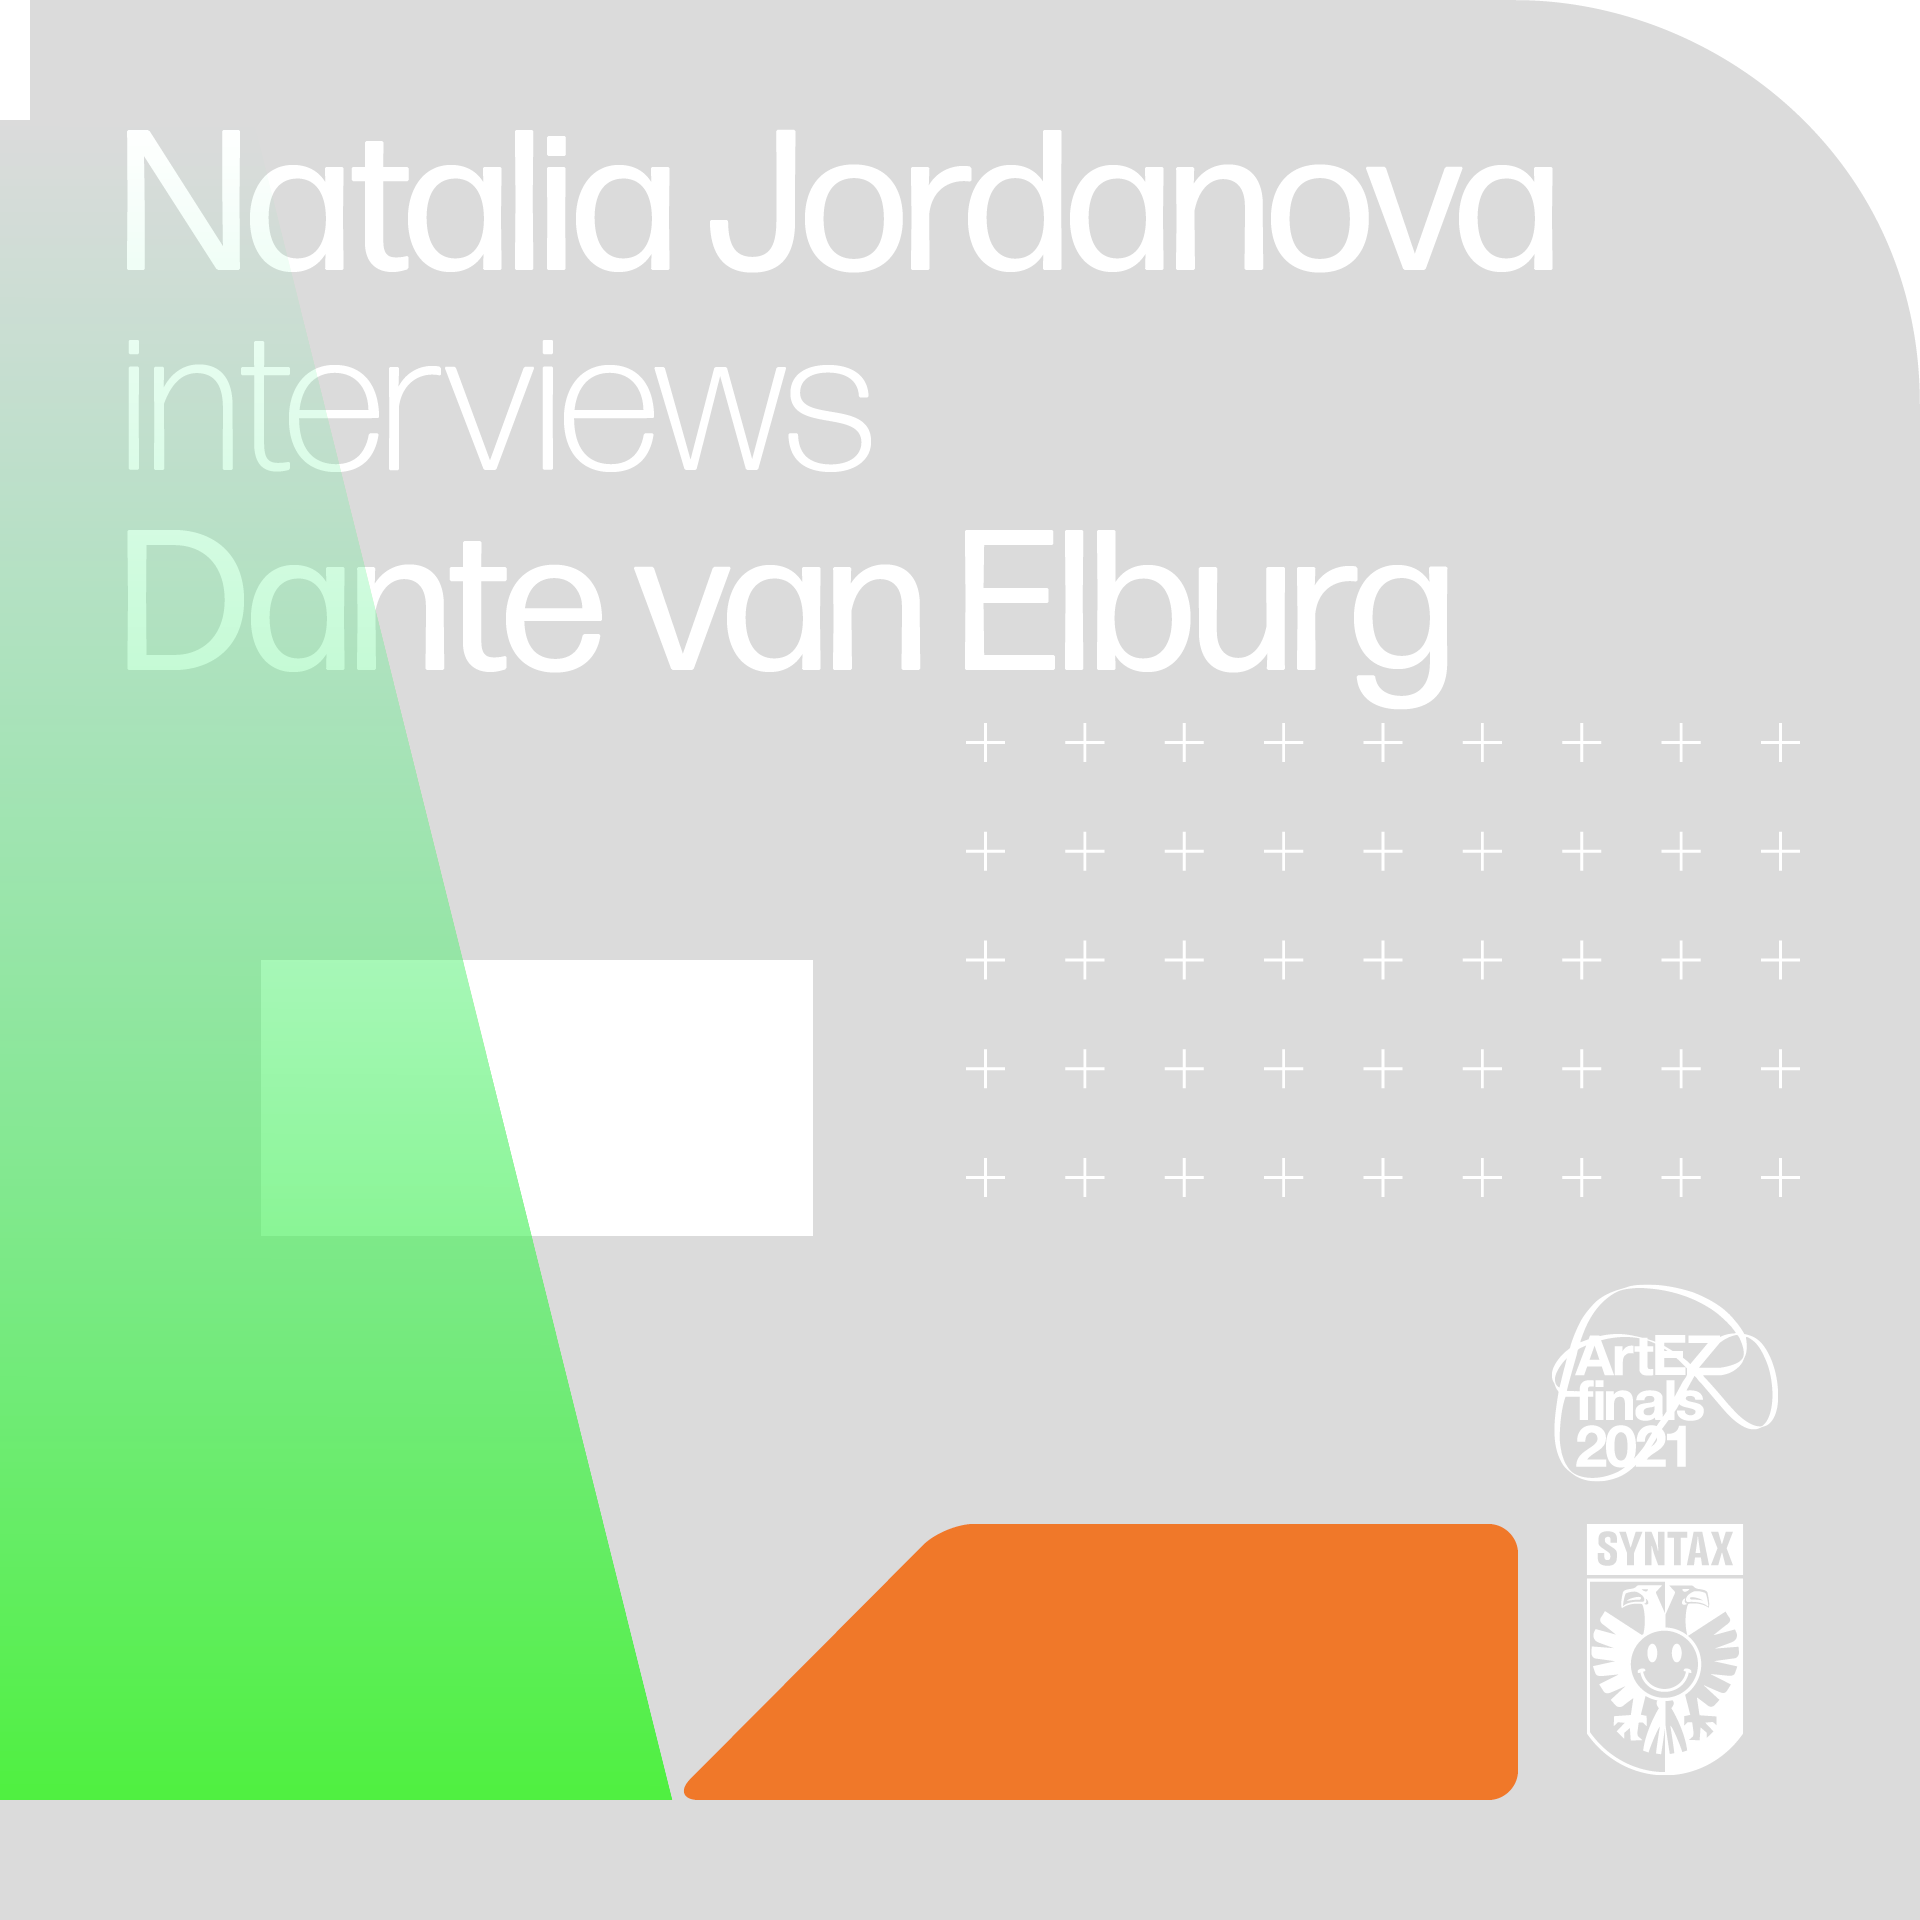 Natalia Jordanova interviews Dante van Elburg